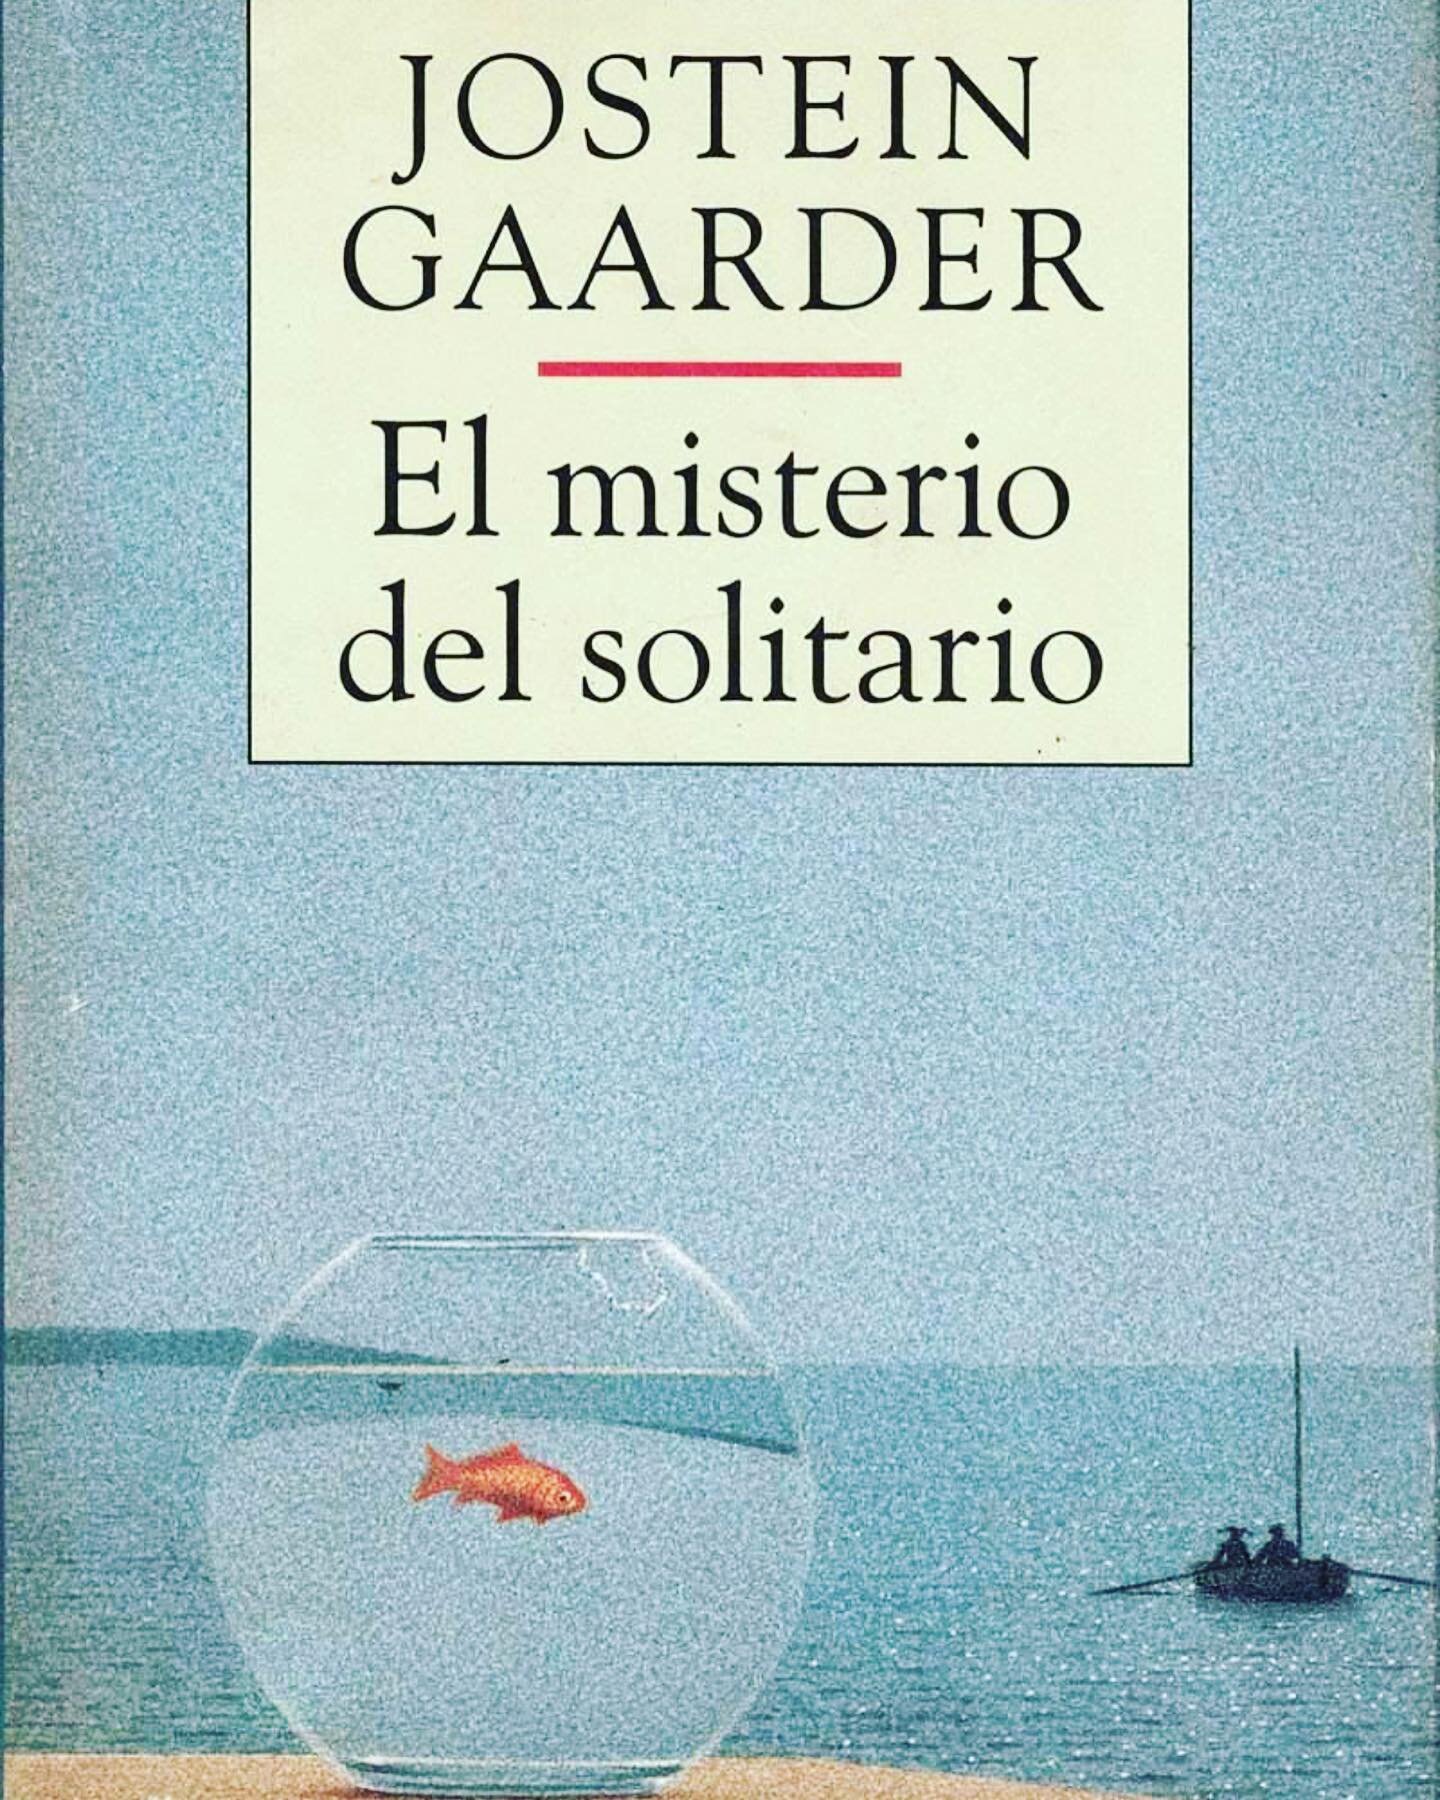 El misterio del solitario, Jostein Gaarder (Oslo, 1952)

Quiz&aacute;s la palabra &laquo;delicioso&raquo; no sea la m&aacute;s apropiada para describir un libro. Sin embargo esa fue mi experiencia al terminar la &uacute;ltima p&aacute;gina de El Mist